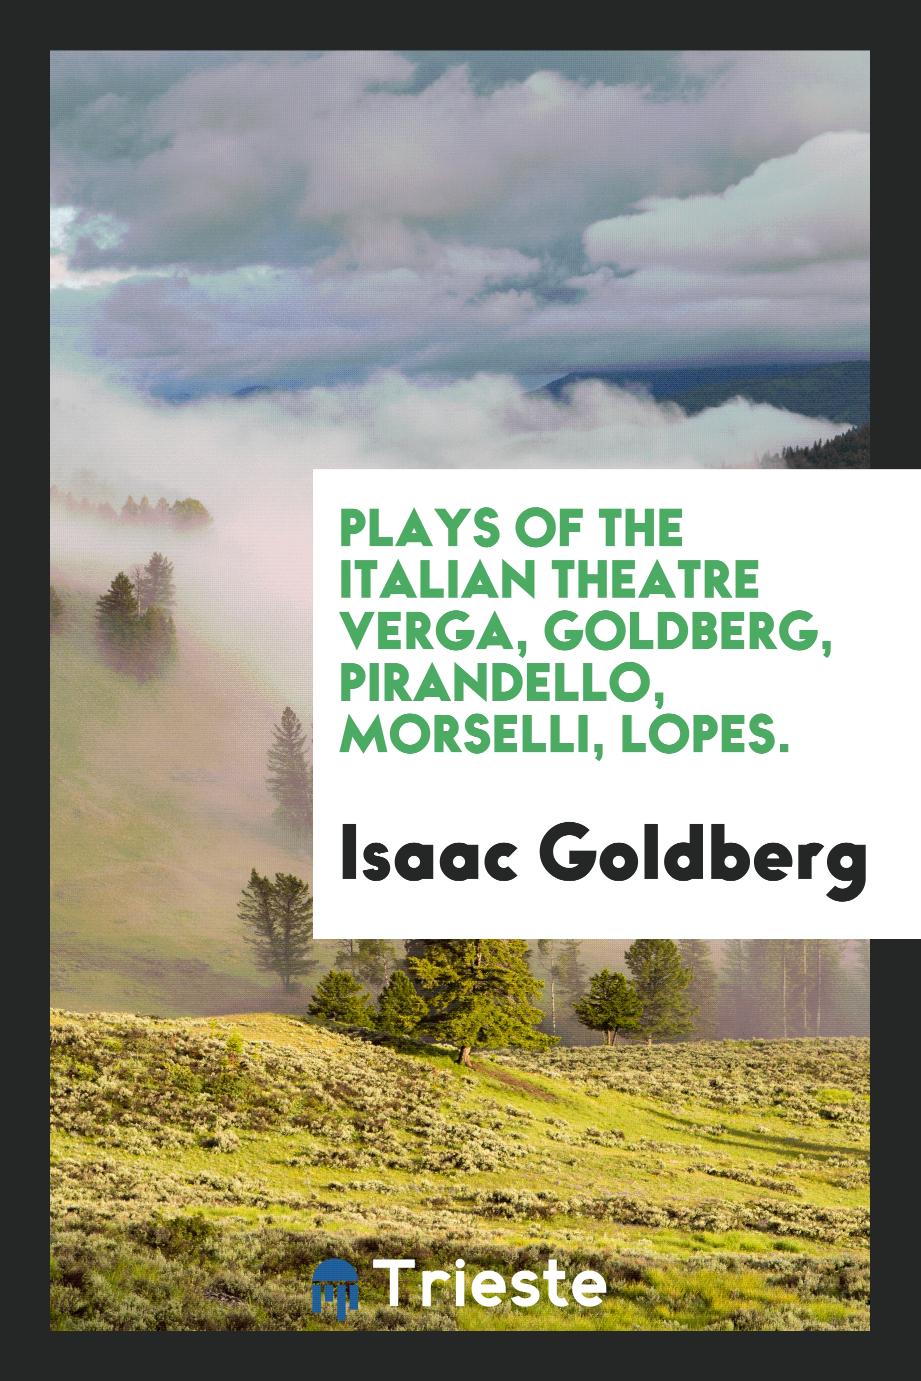 Plays of the Italian theatre Verga, Goldberg, Pirandello, Morselli, Lopes.